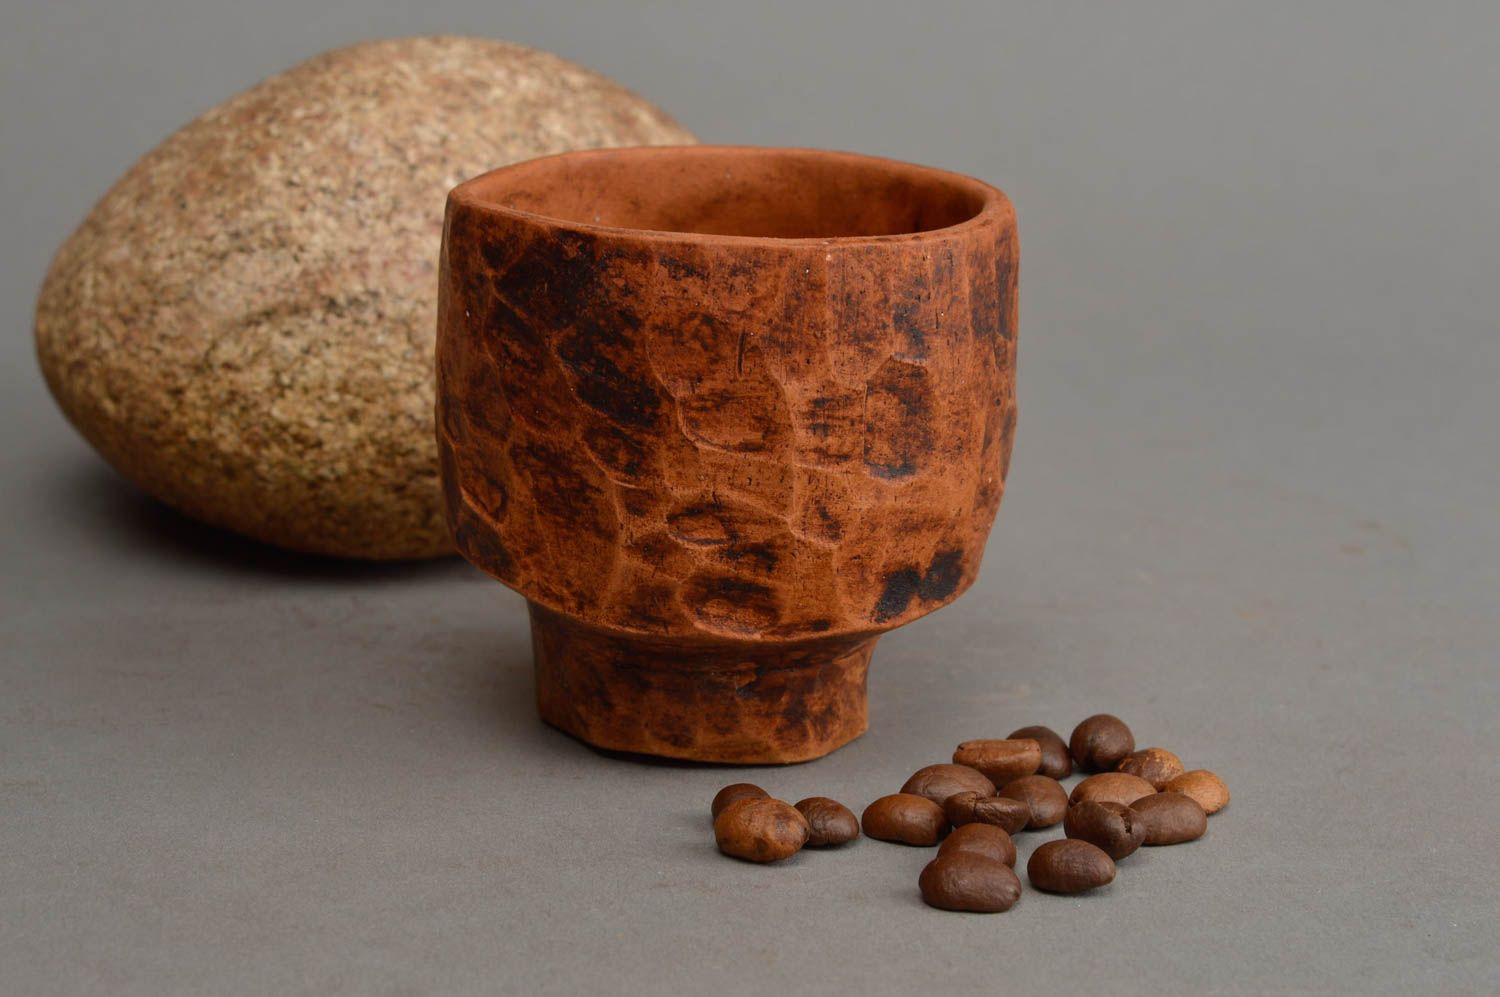 Vaso de chupito cerámico artesanal vajilla moderna regalo original eco foto 1